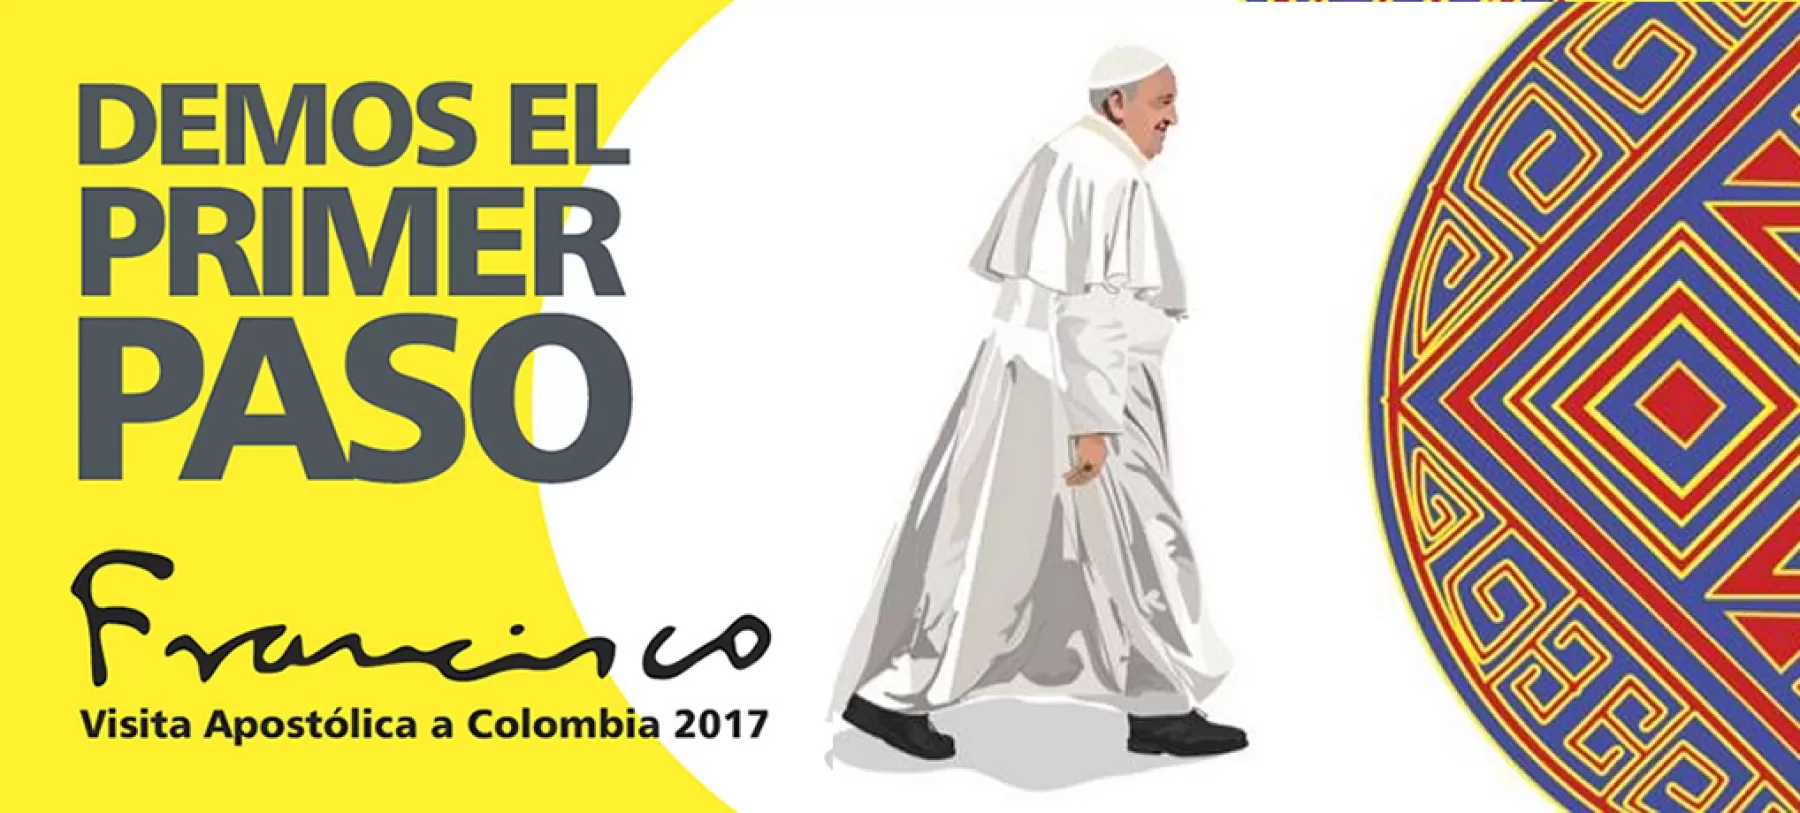 Este viernes su Santidad el Papa Francisco visita a la ciudad llanera de Villavicencio. Conozca detalles de la misa campal que se realizará en esta ciudad.